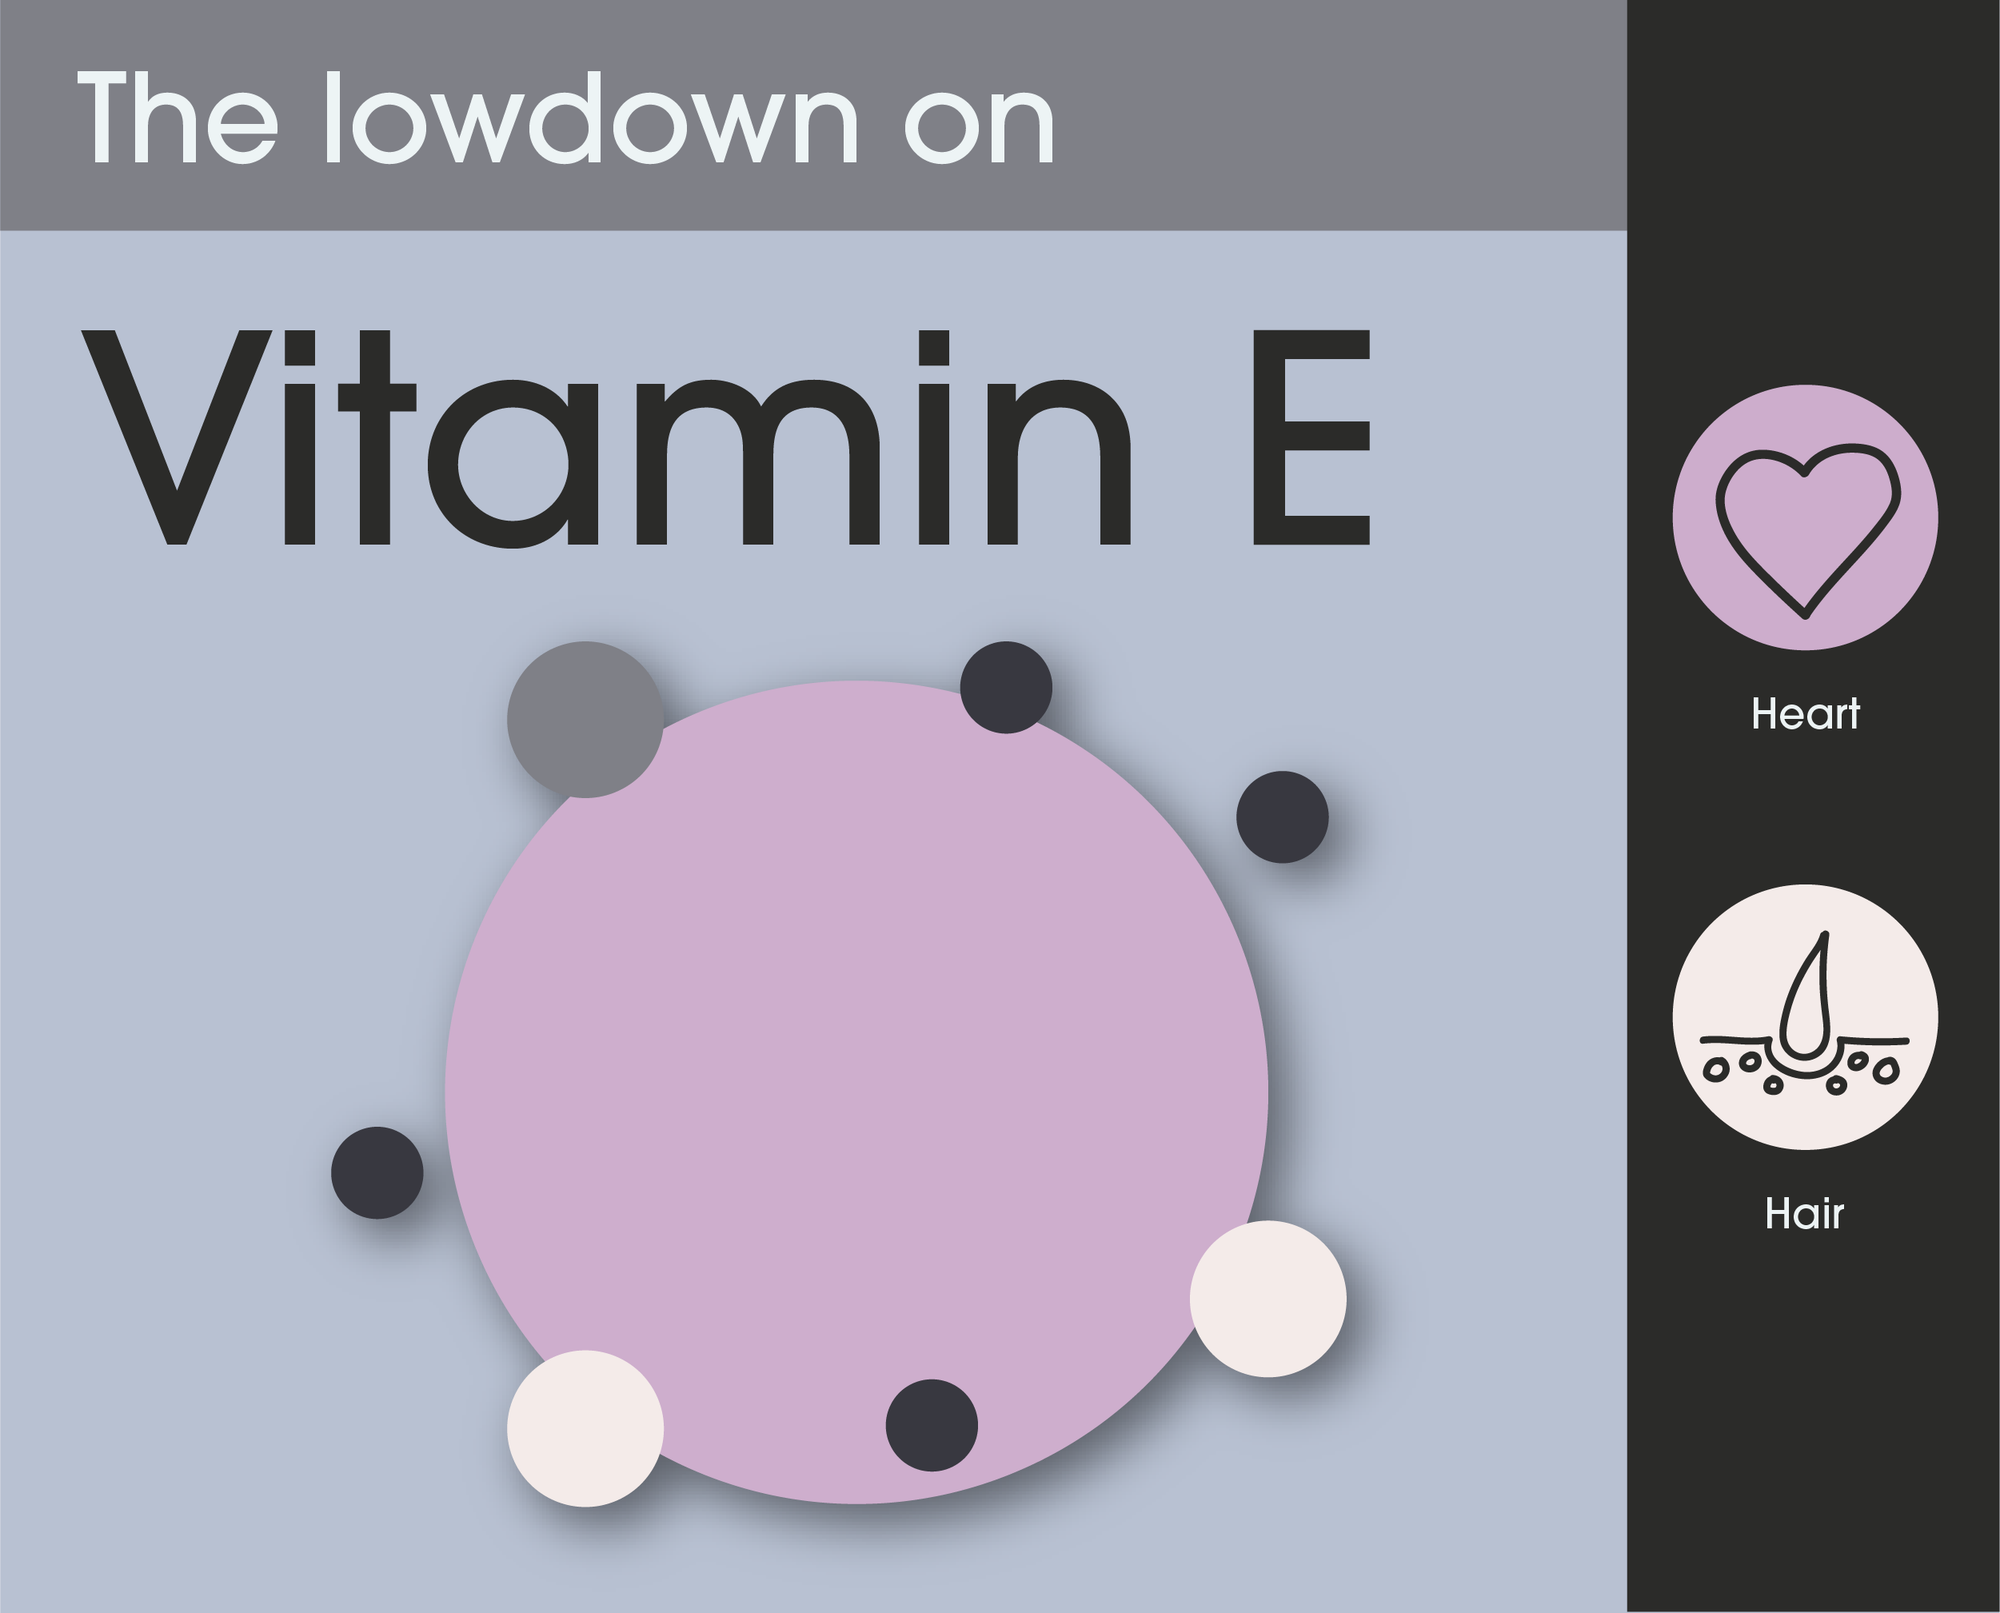 The lowdown of Vitamin E